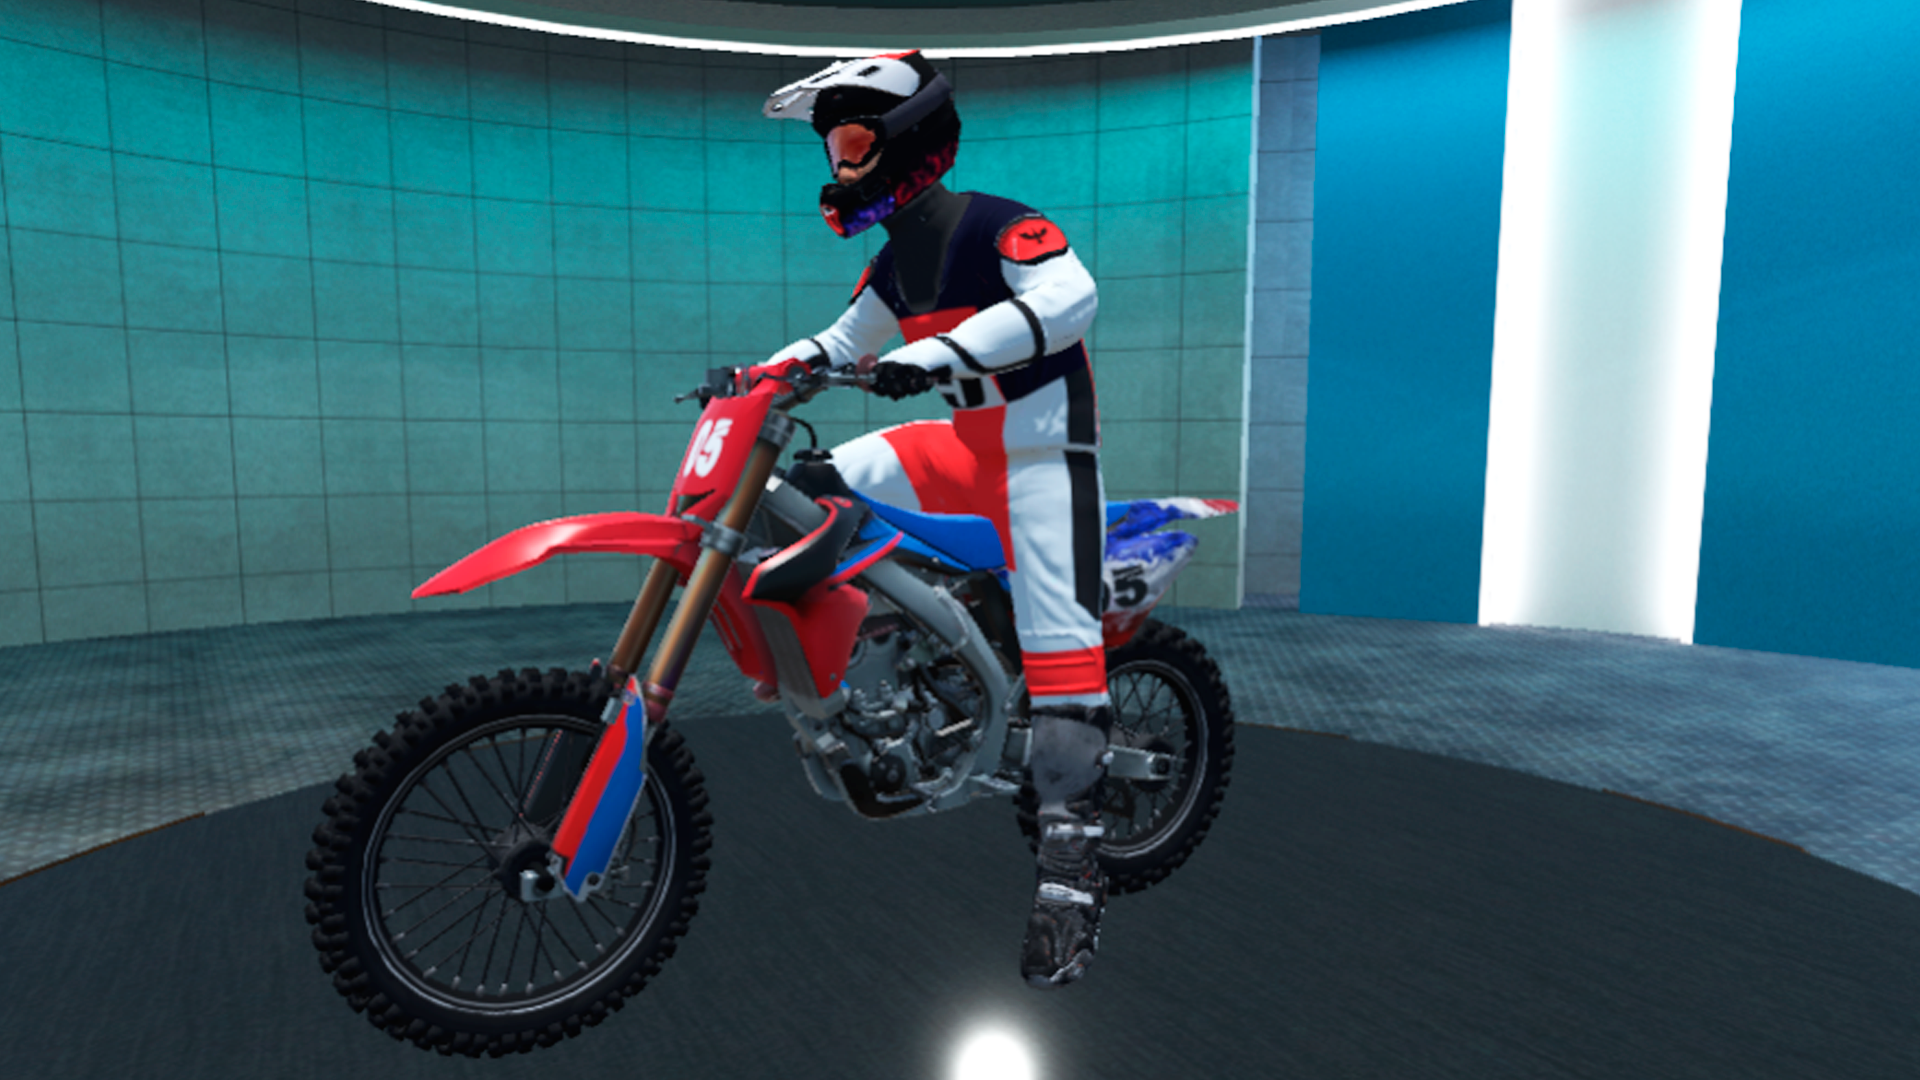 Download do APK de simulador de jogo de corrida de moto freestyle para  Android